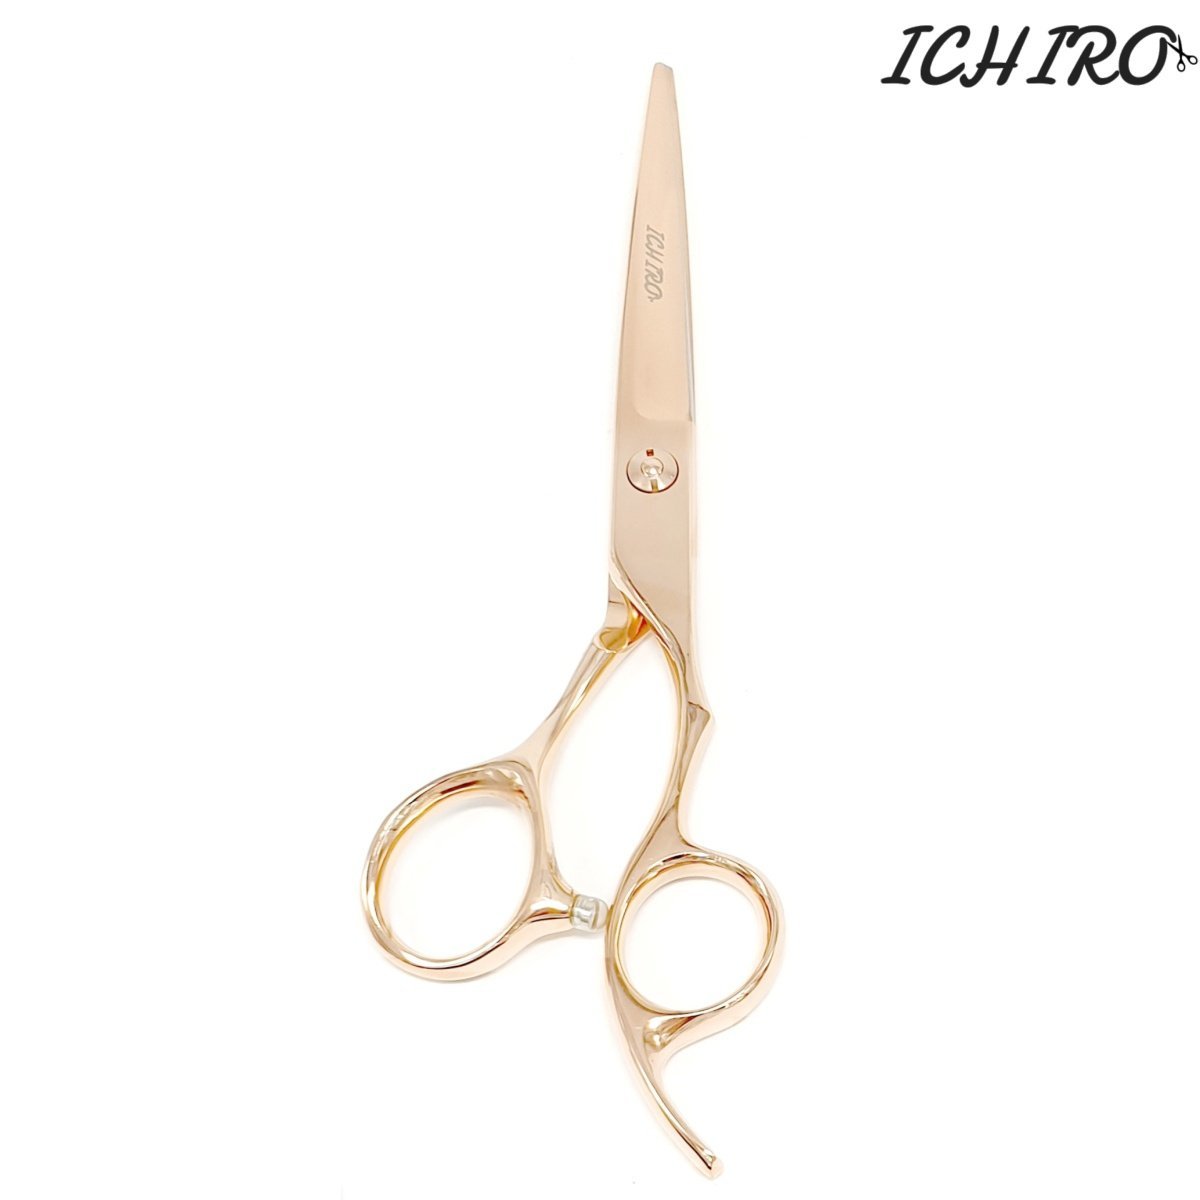 The Ichiro Rose Hair Cutting Scissors